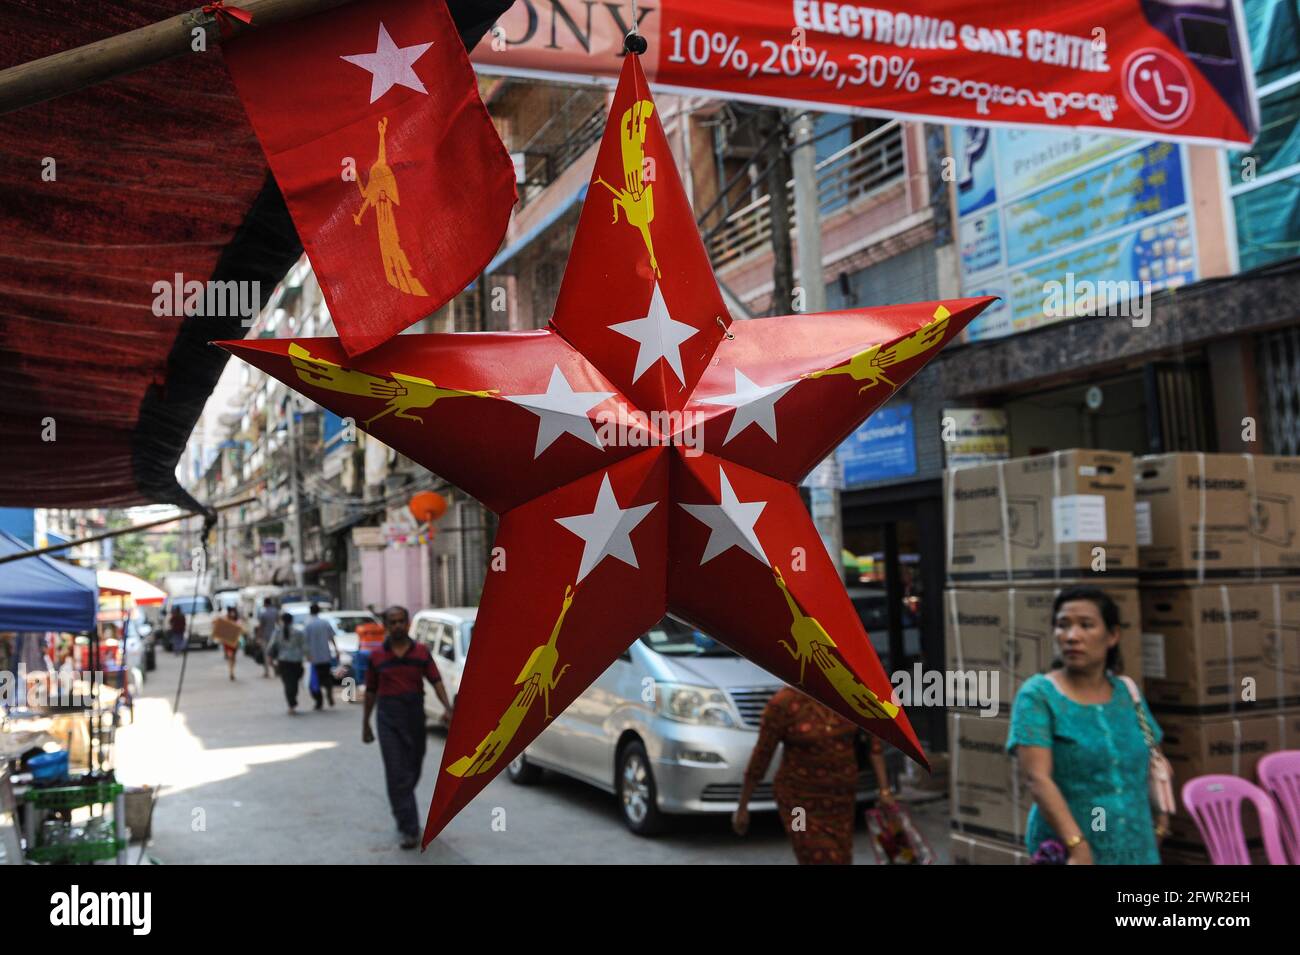 31.10.2015, Yangon, Myanmar, Asien - in einem Geschäft hängt ein roter Stern aus Pappe mit dem Logo der NLD-Partei (National League for Democracy). Stockfoto